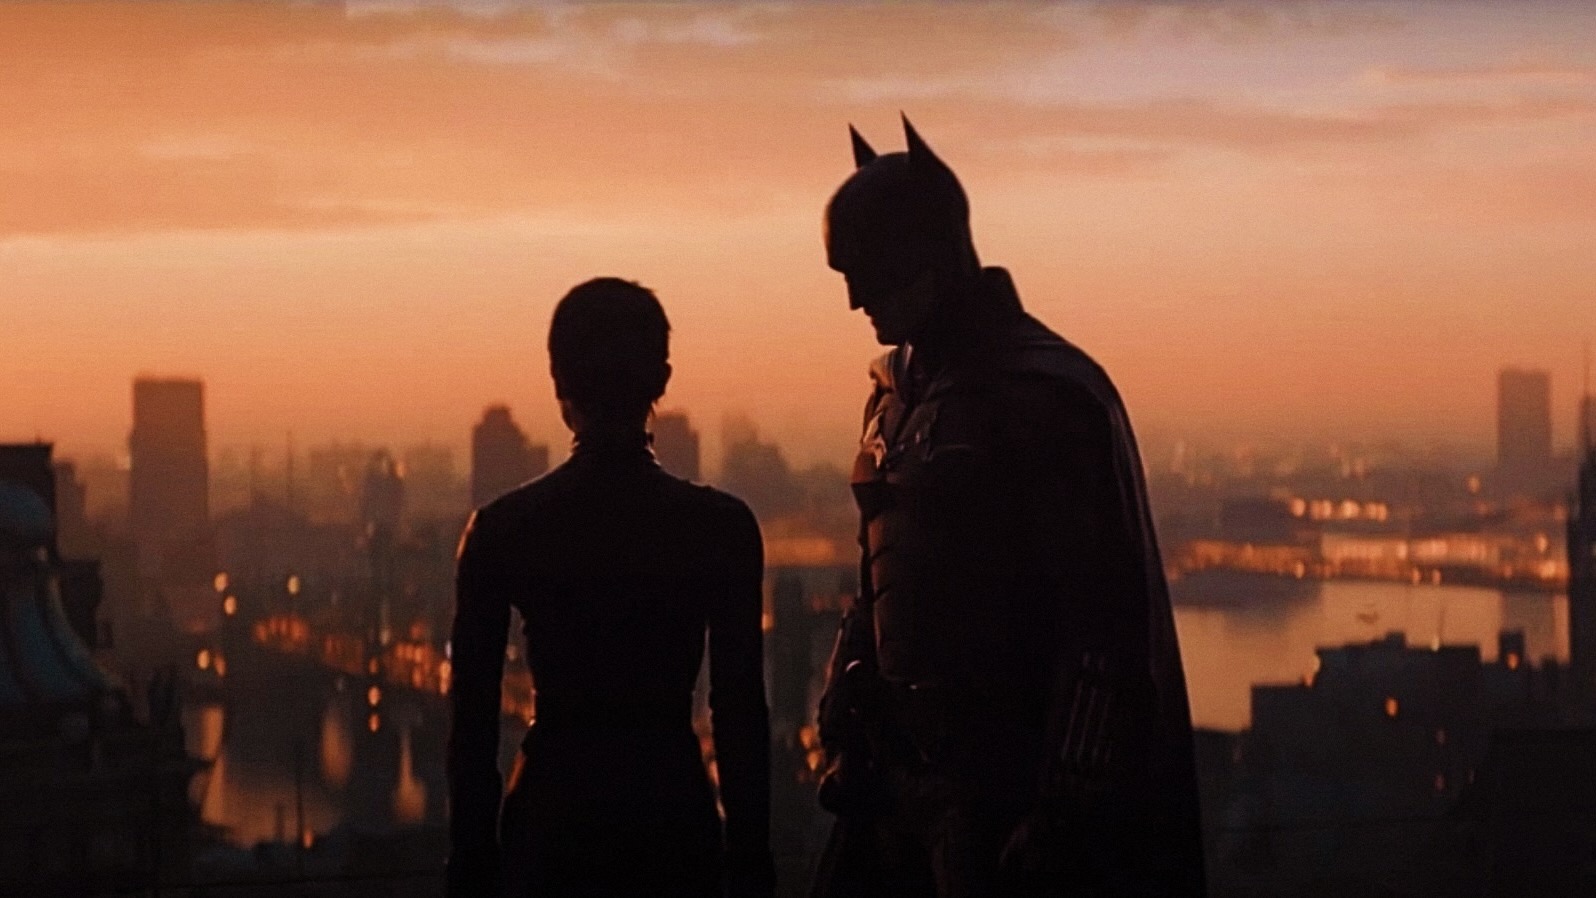 佐伊·克拉维兹（Zoe Kravitz）和罗伯特·帕丁森（Robert Pattinson）在剪影中饰演蝙蝠侠和猫女的猫女 - 蝙蝠侠在HBO Max上播放什么时候